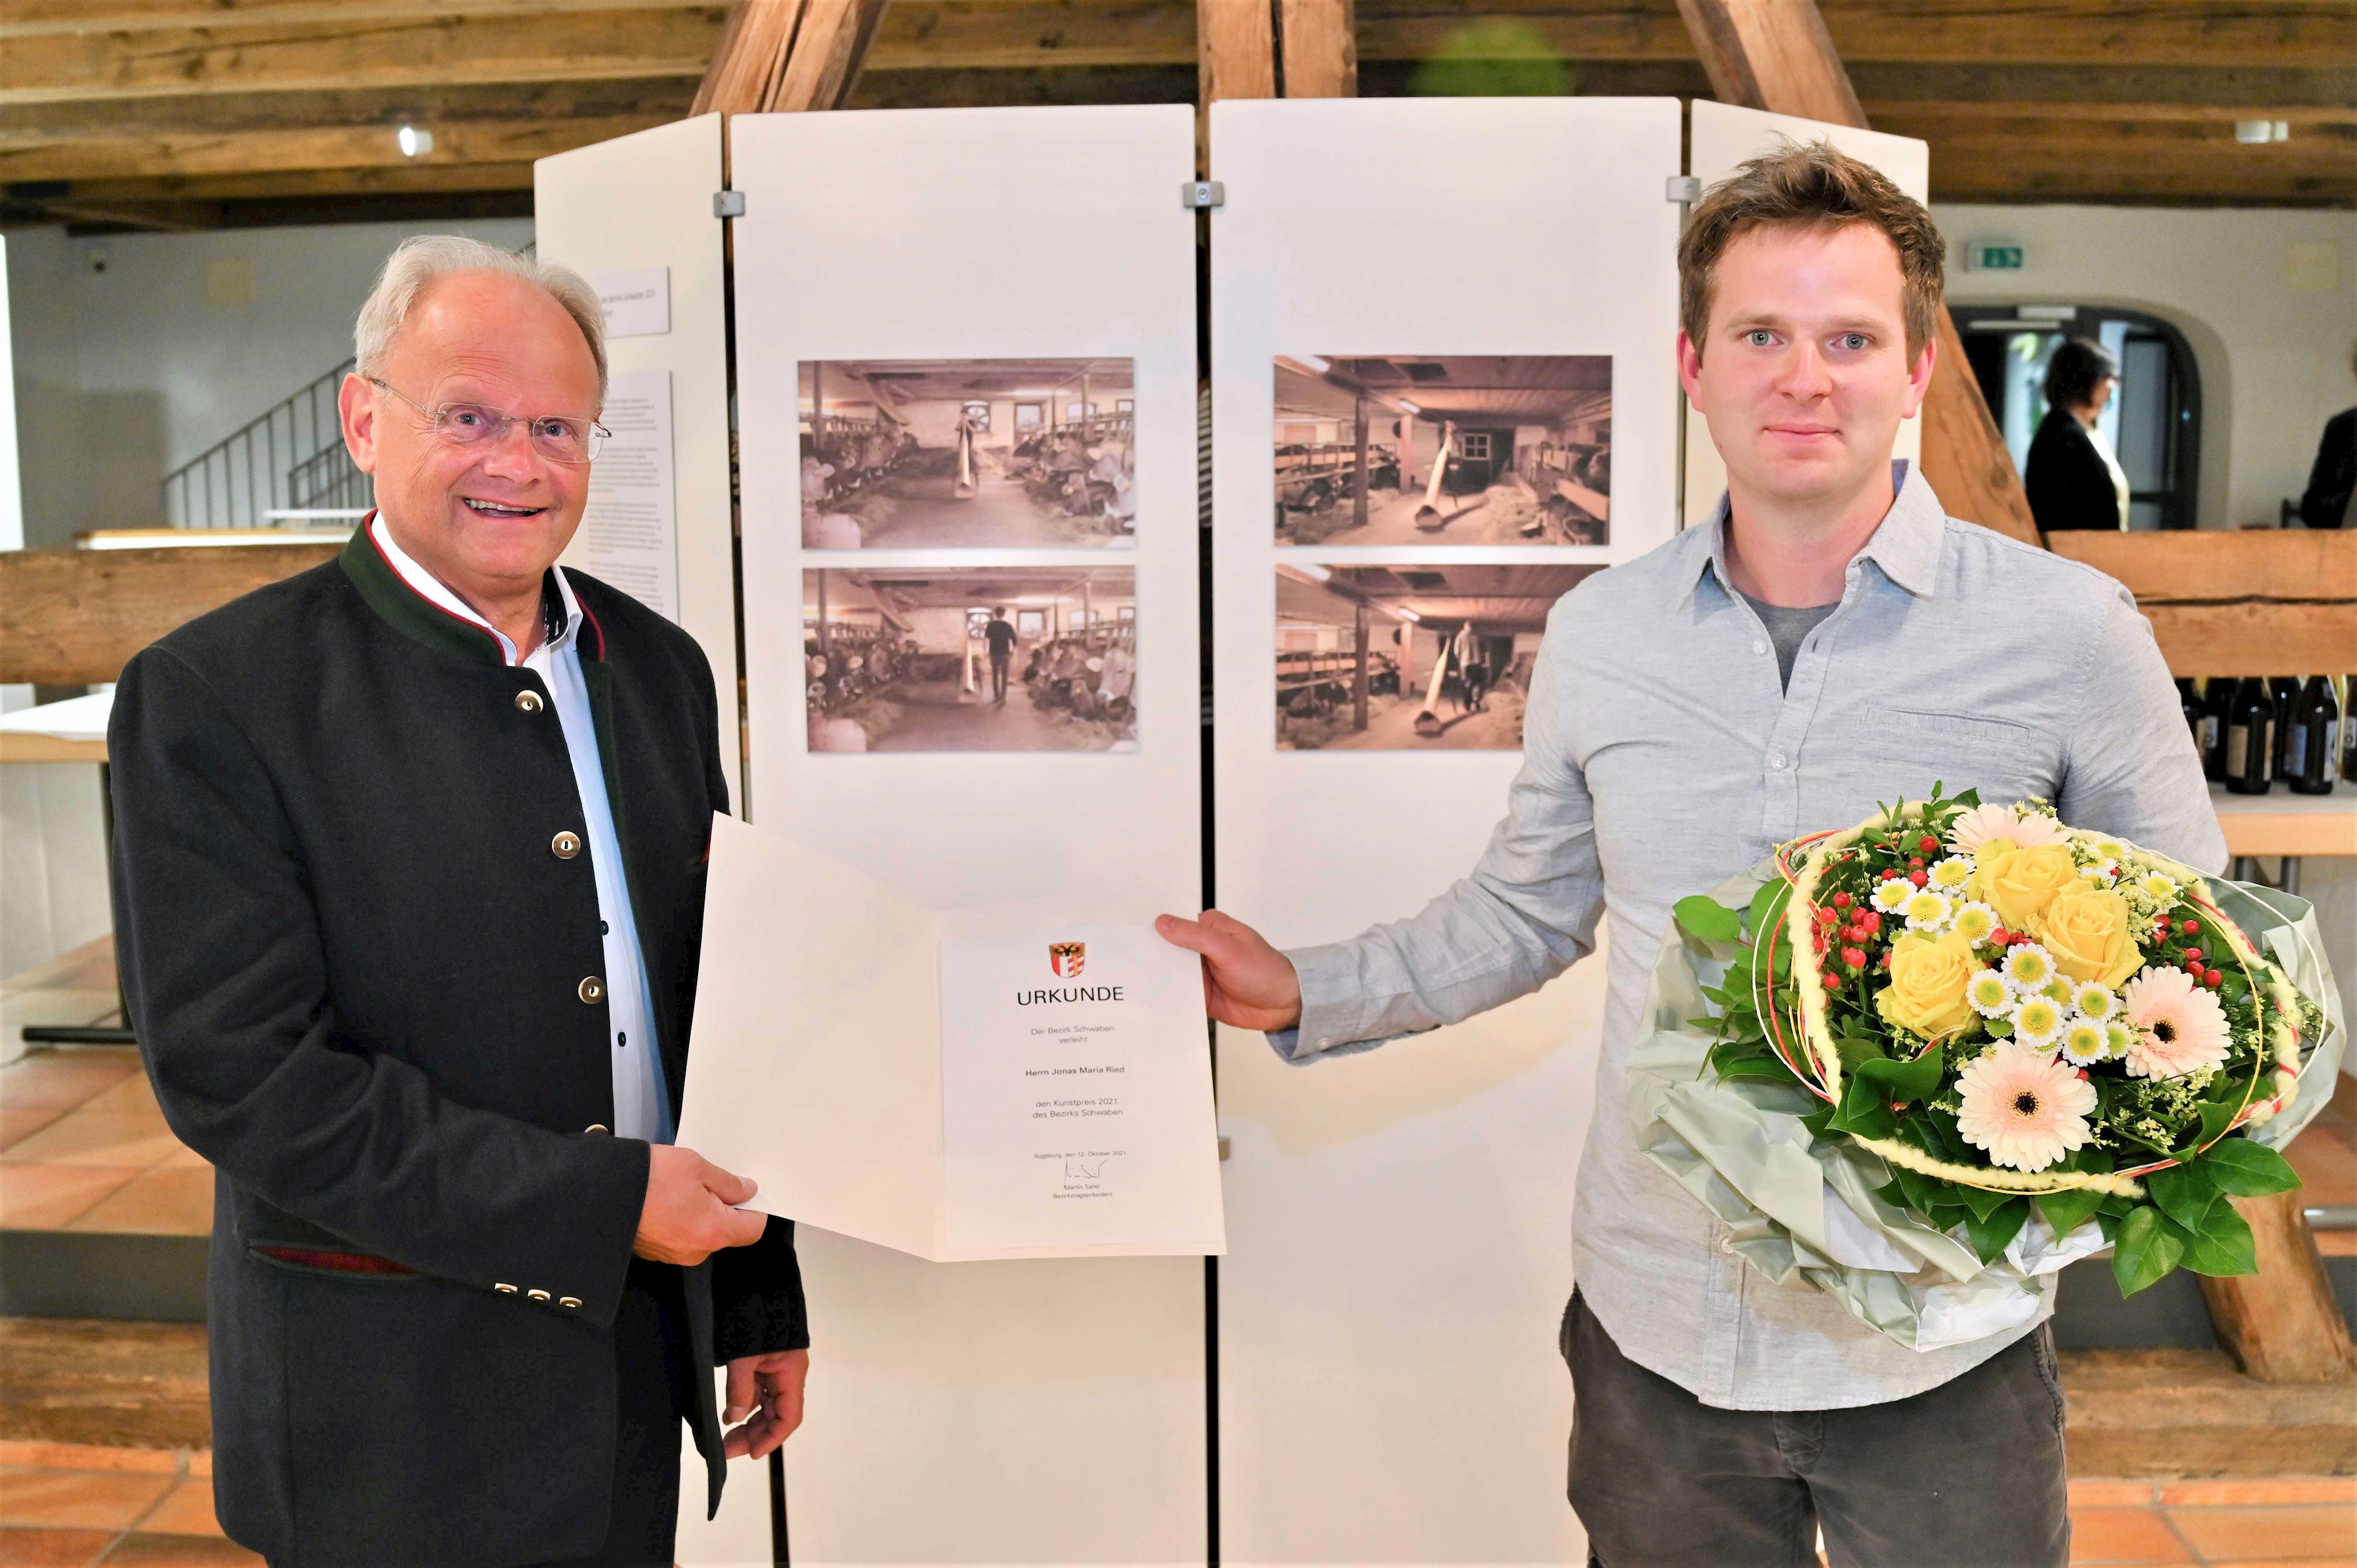 Kunstpreisverleihung 2021: Preisträger Jonas Maria Ried zusammen mit Alfons Weber (stellvertretender Bezirkstagspräsident)